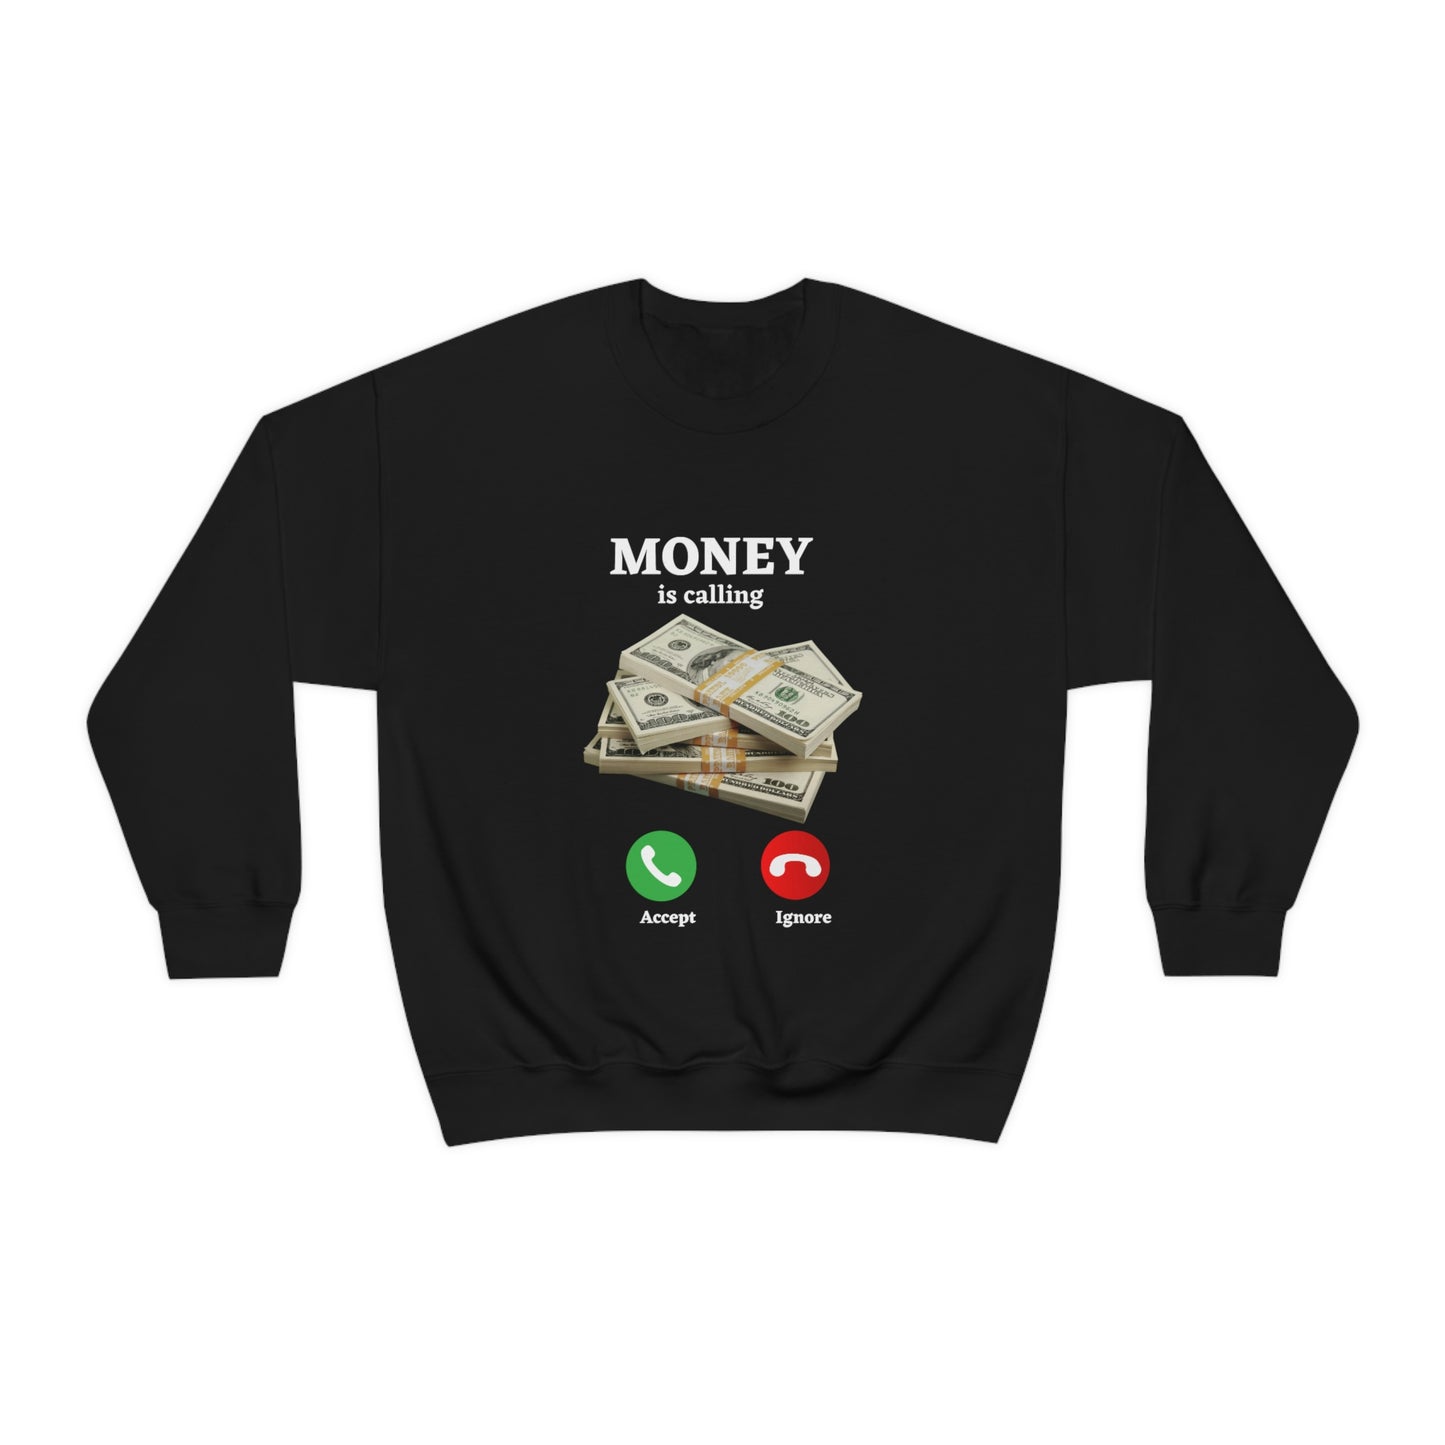 MONEY IS CALLING: Unisex Crewneck Sweatshirt